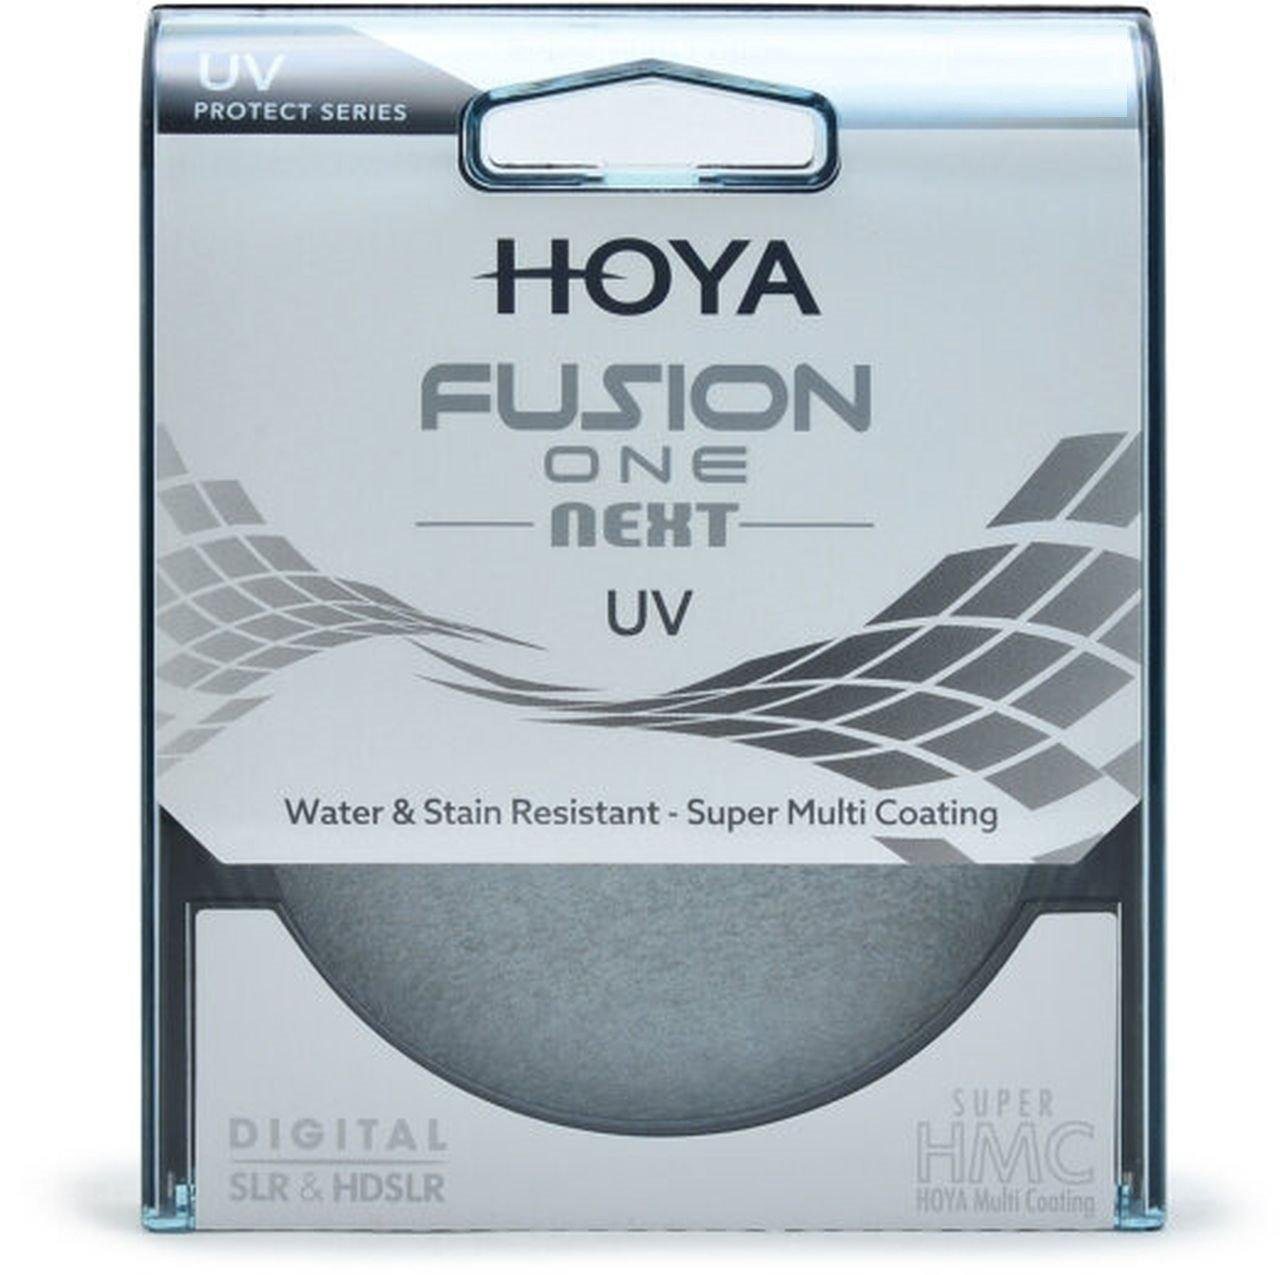 Hoya Fusion ONE Next UV-Filter 77mm Objektivzubehör von Hoya